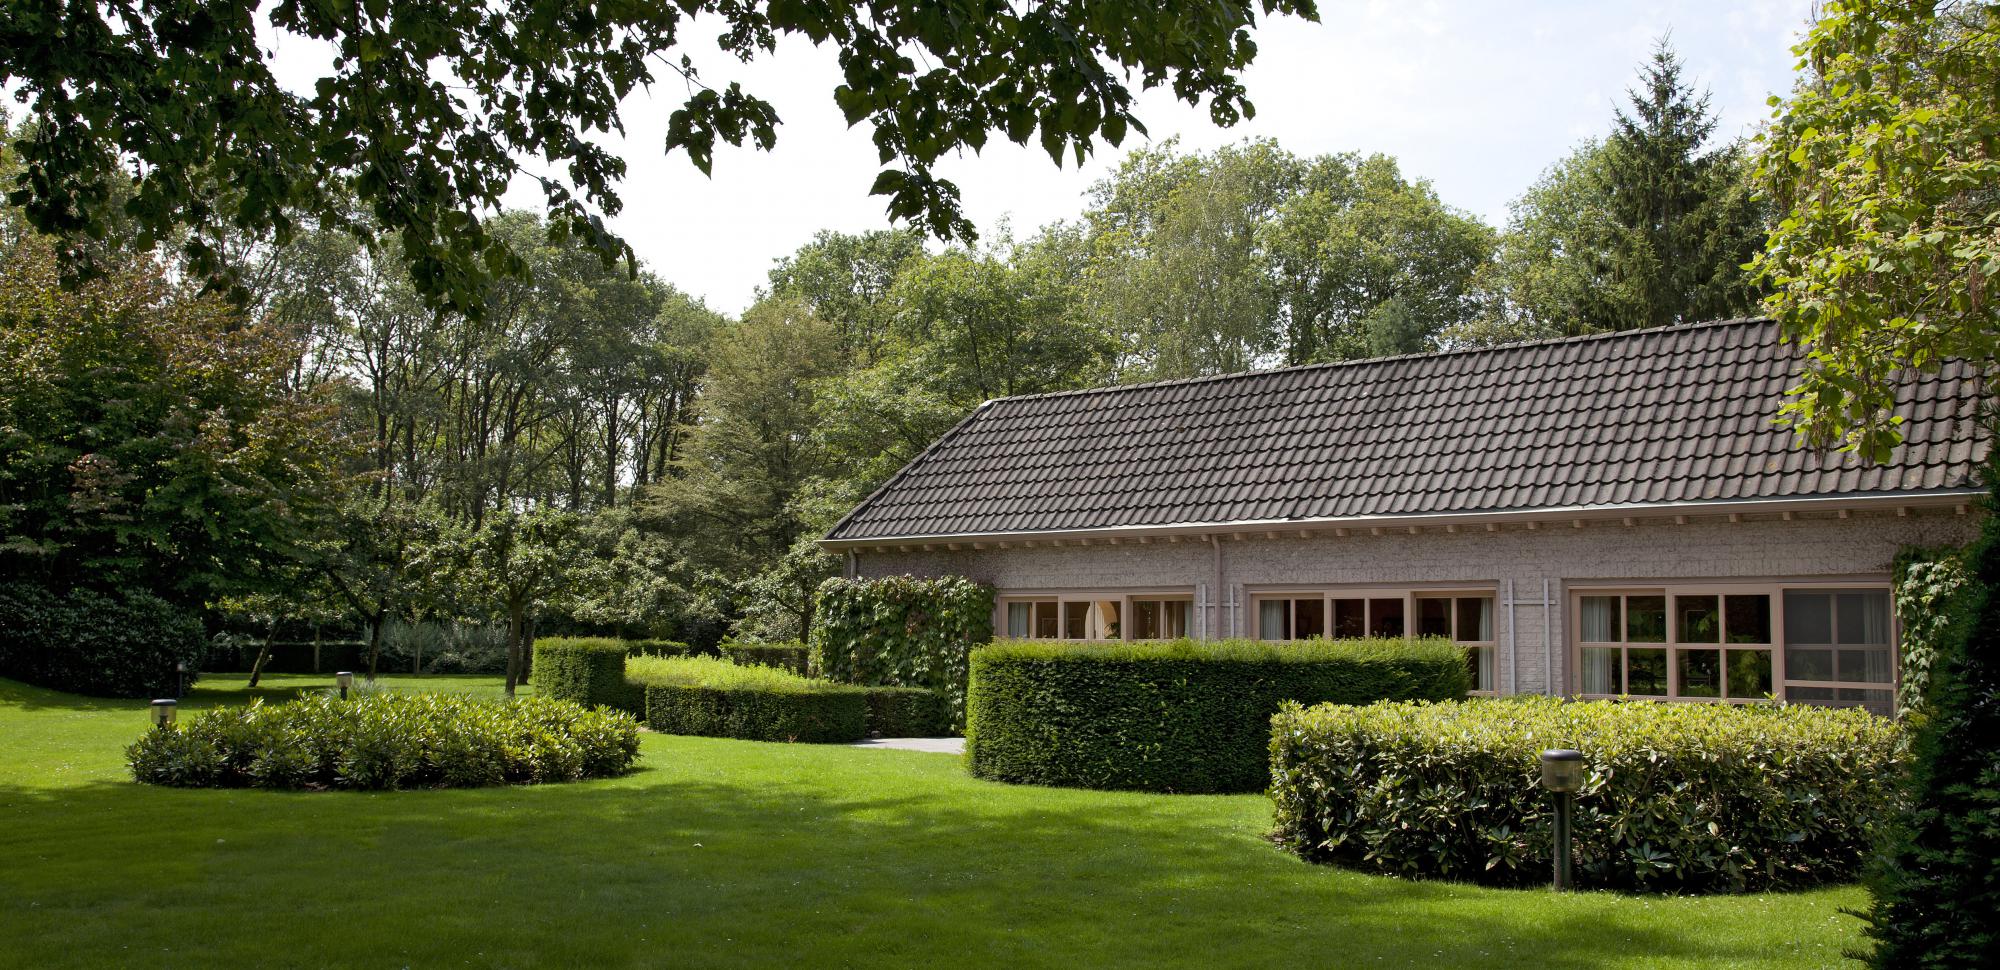 villatuin drunen nederland